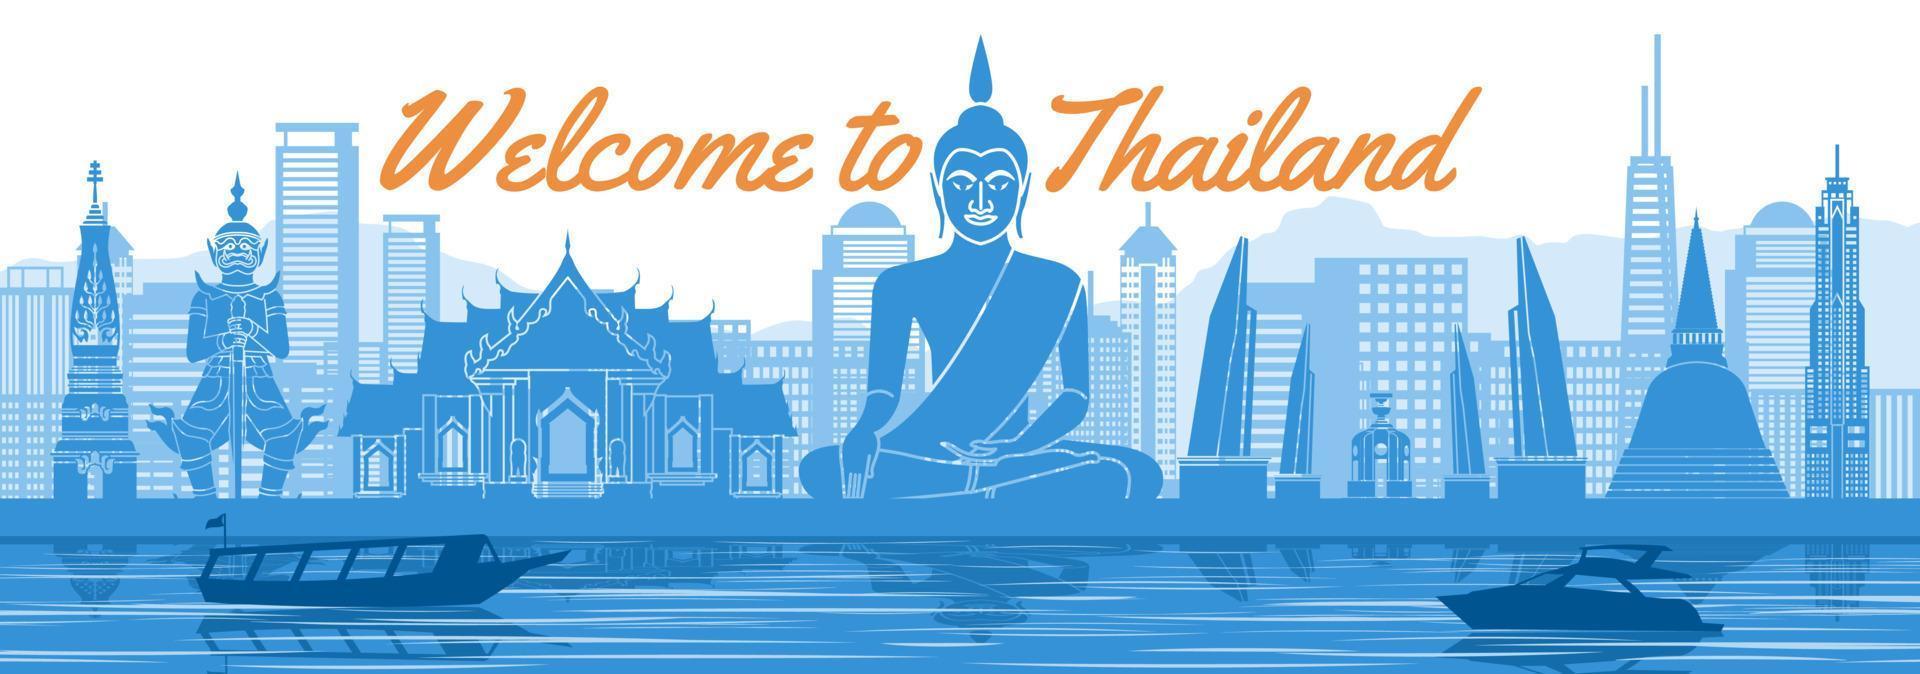 marco famoso da tailândia com design de cor azul e branco vetor